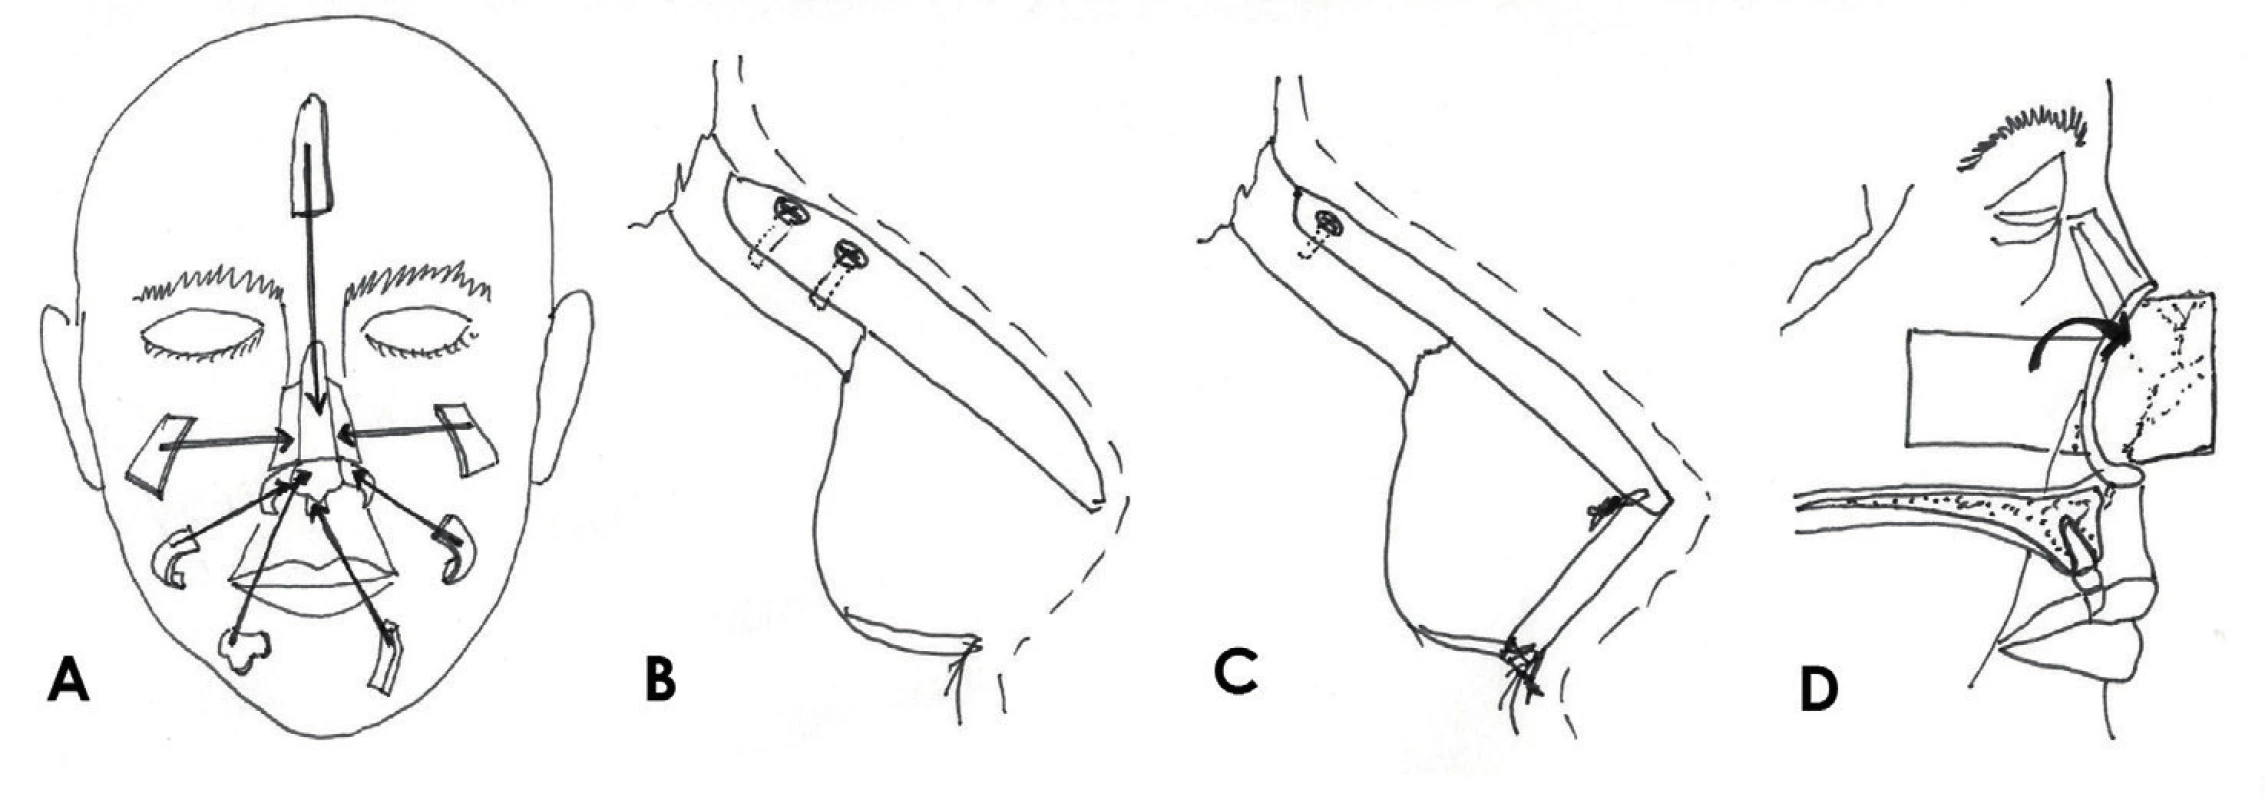 Rekonstukce opěrné struktury nosu: A) jednotlivé chrupavčité a kostěné součásti skeletu, B) konzolový
štěp, C) L-štěp, D) kompozitní pivotální lalok.
Zdroj: Kresba autora podle Thornton JF, Griffin, John R. Nasal Reconstruction. Sel Read Plast. Surg. 2006,
10(12):6-8.